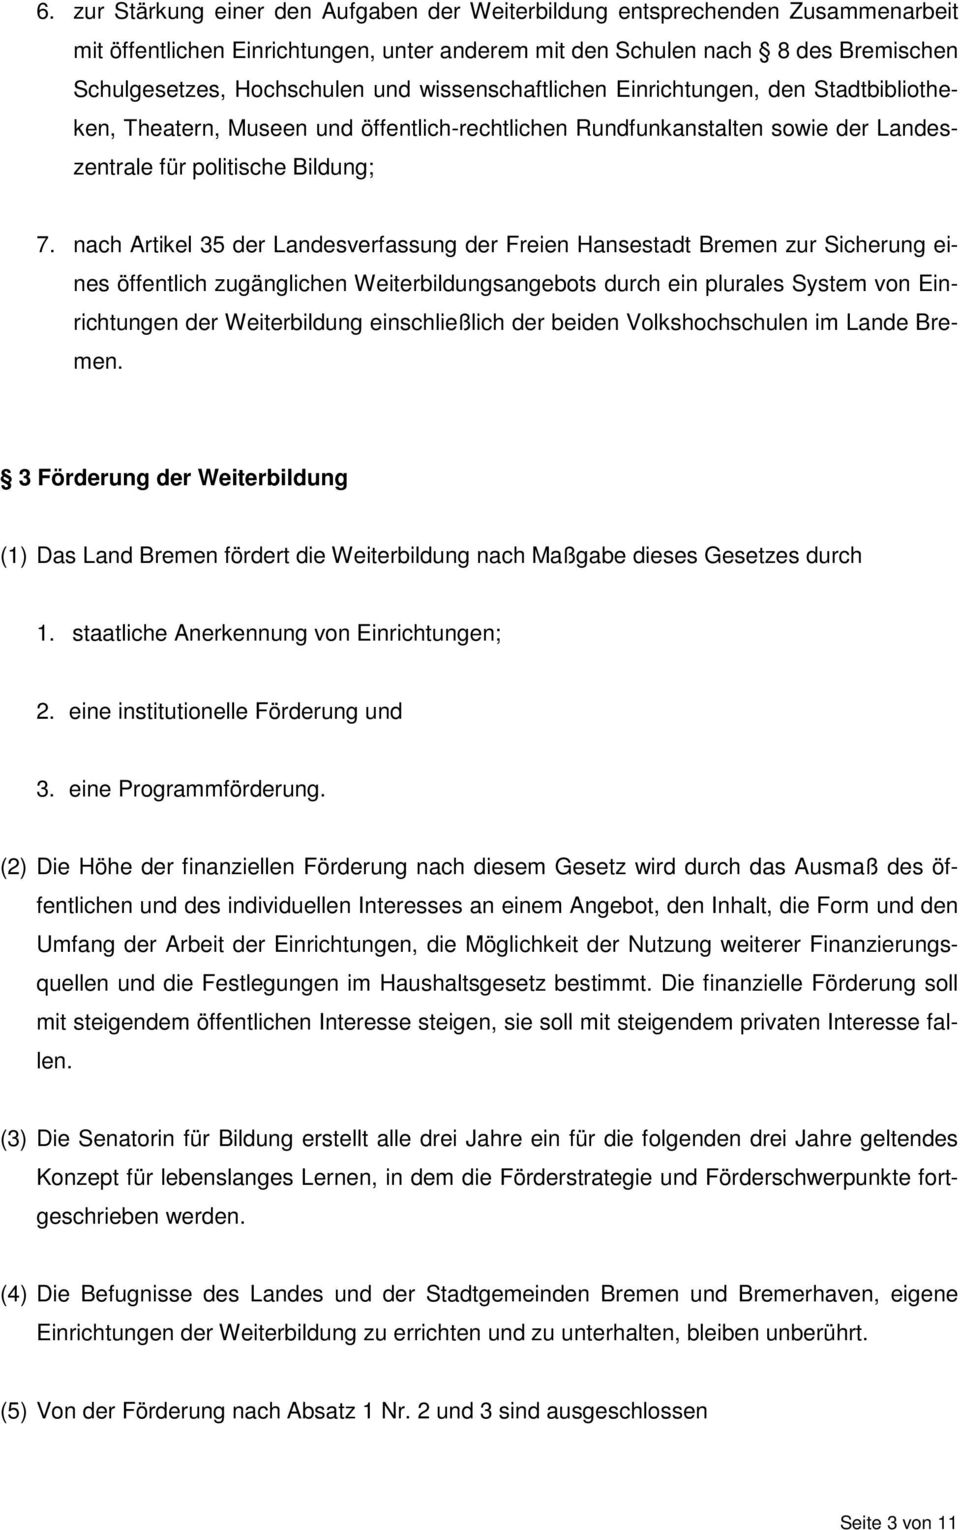 nach Artikel 35 der Landesverfassung der Freien Hansestadt Bremen zur Sicherung eines öffentlich zugänglichen Weiterbildungsangebots durch ein plurales System von Einrichtungen der Weiterbildung